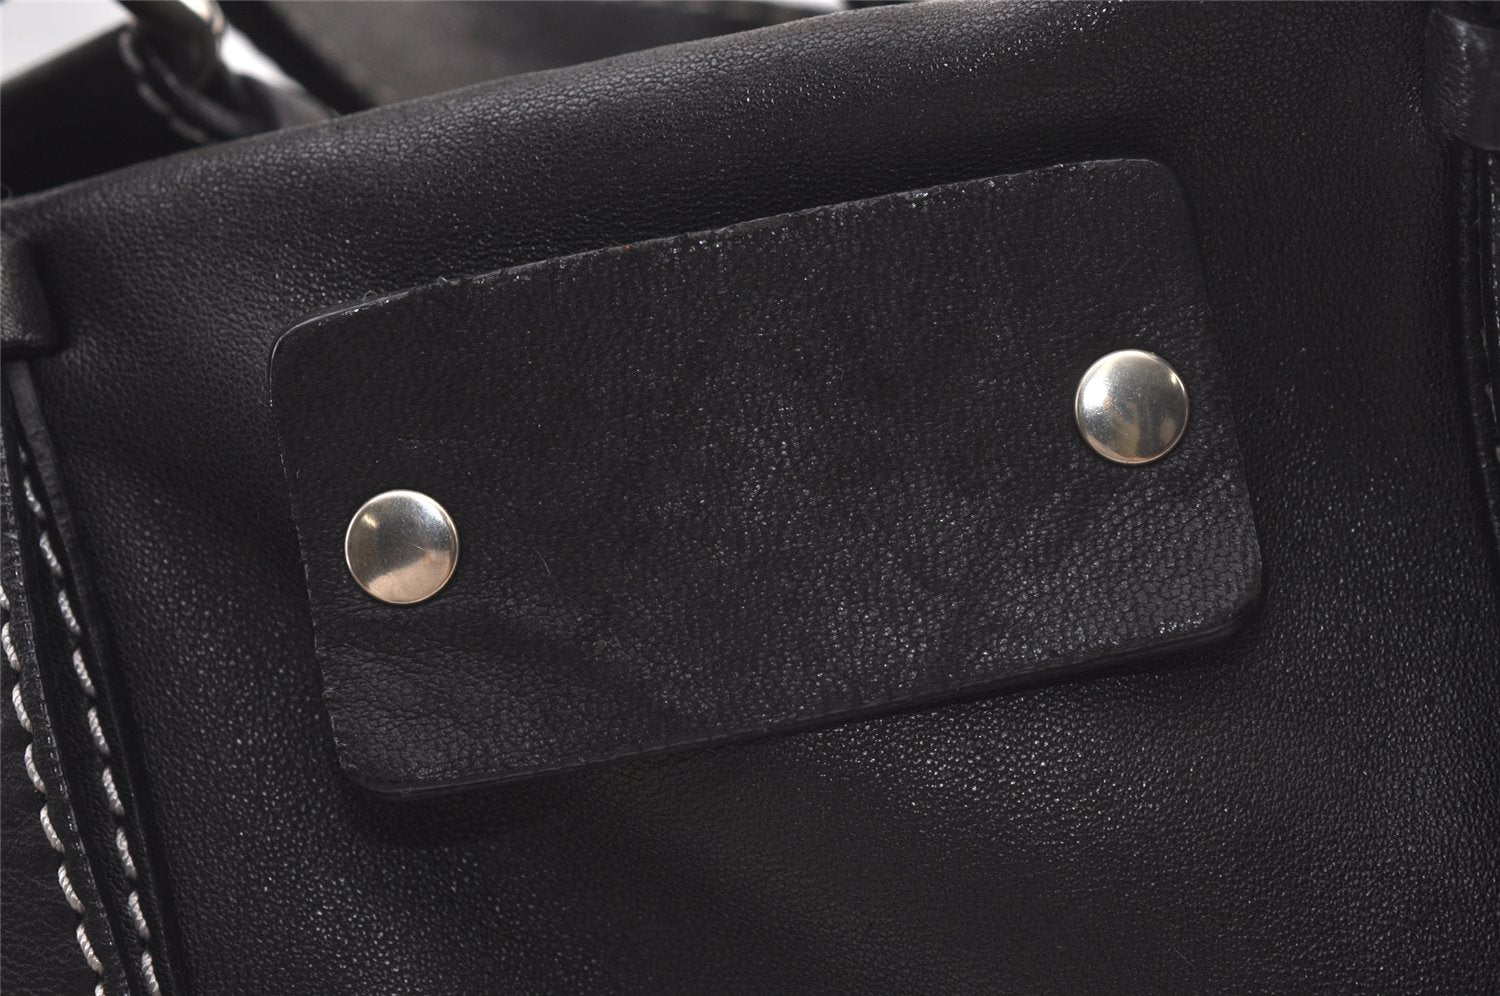 Authentic Chloe Vintage Shoulder Tote Bag Leather Black 8898J